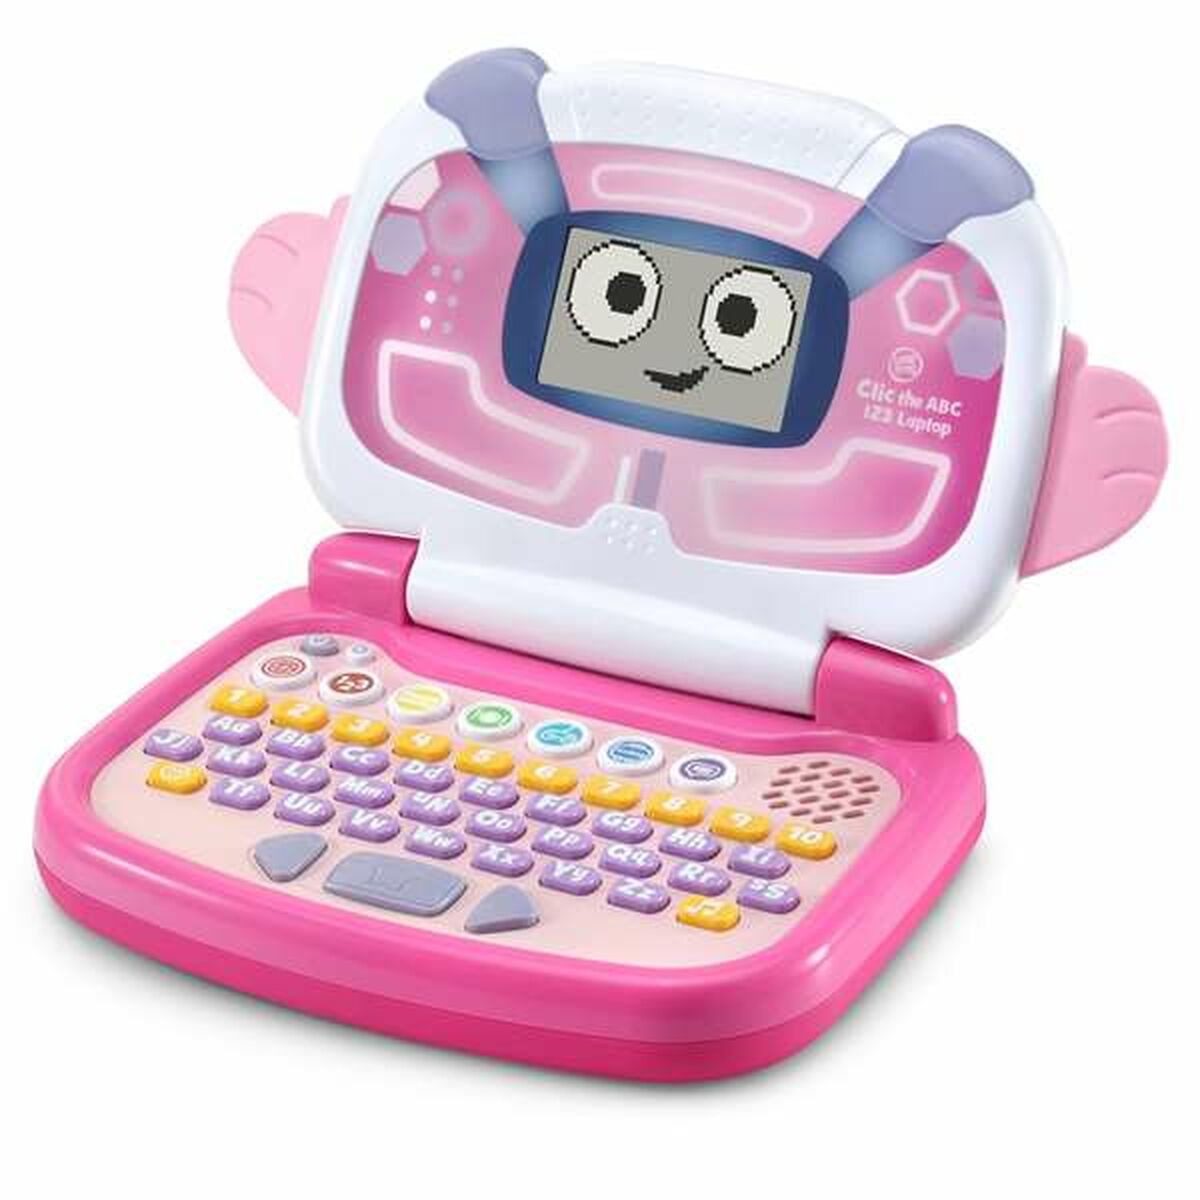 Toy computer Vtech Pequegenio ES Pinkki